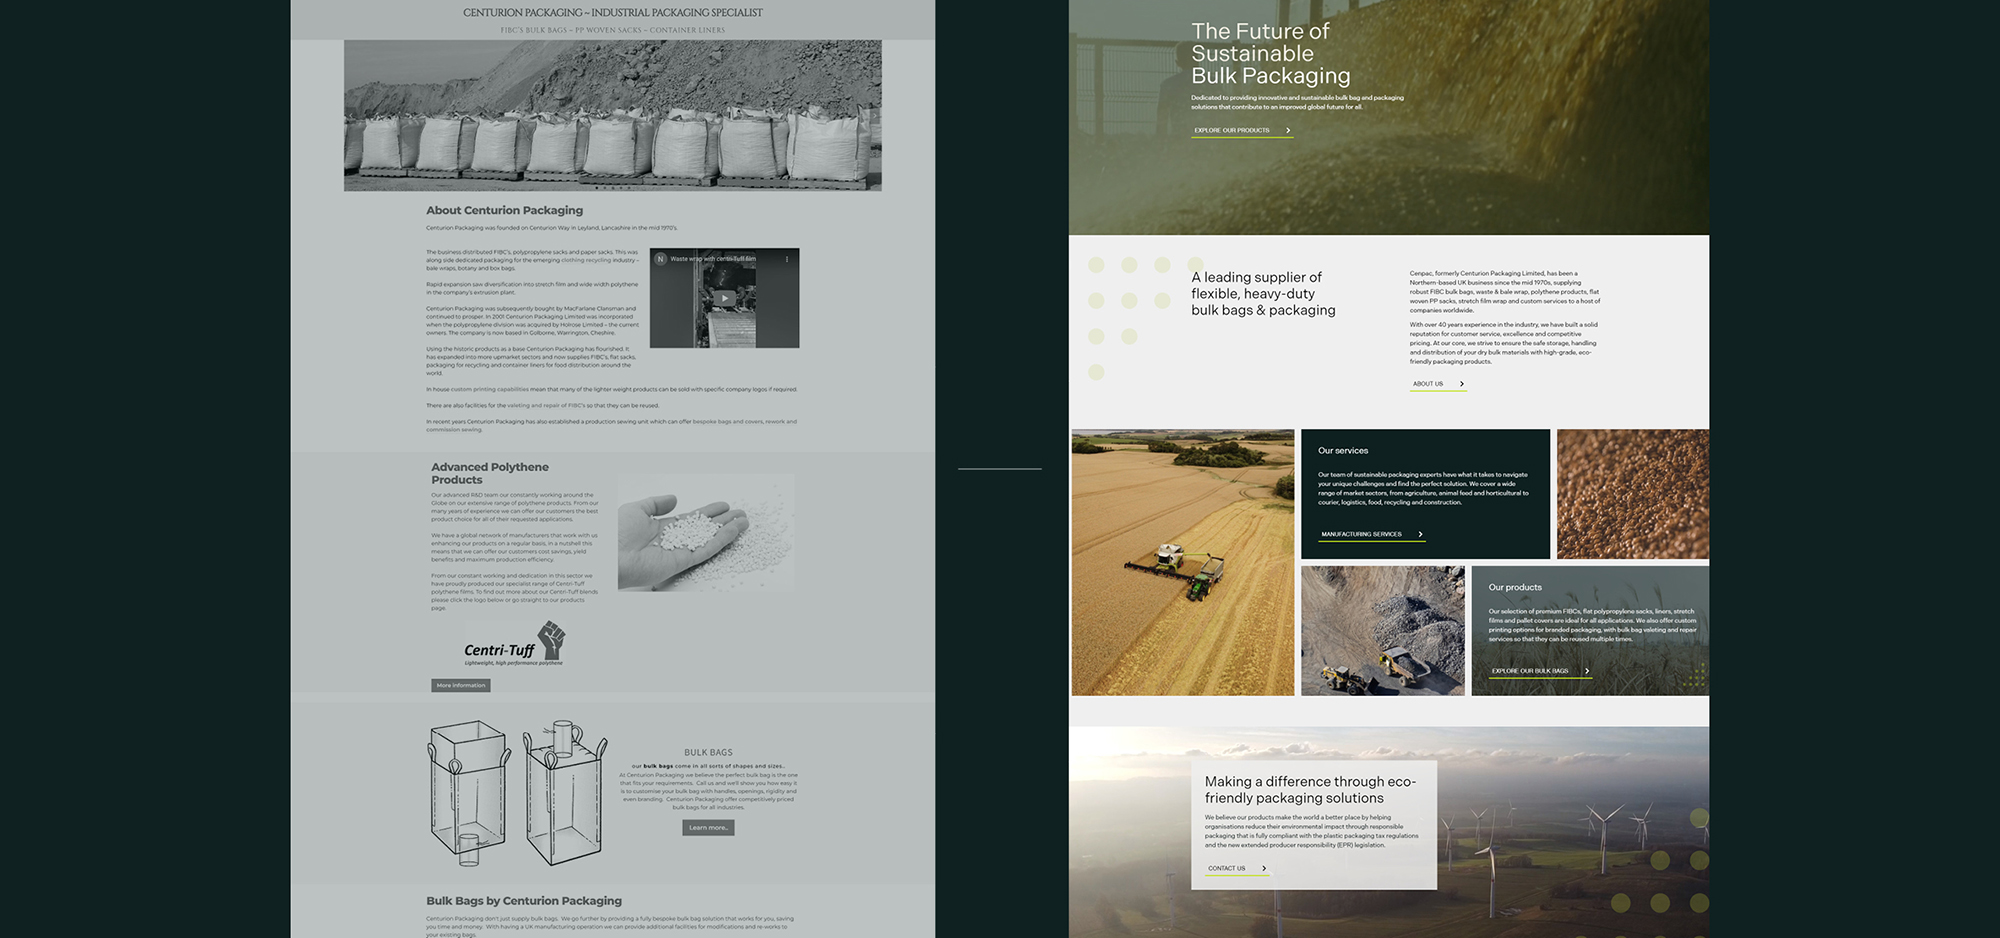 Old Centurion homepage design next to new Cenpac website design